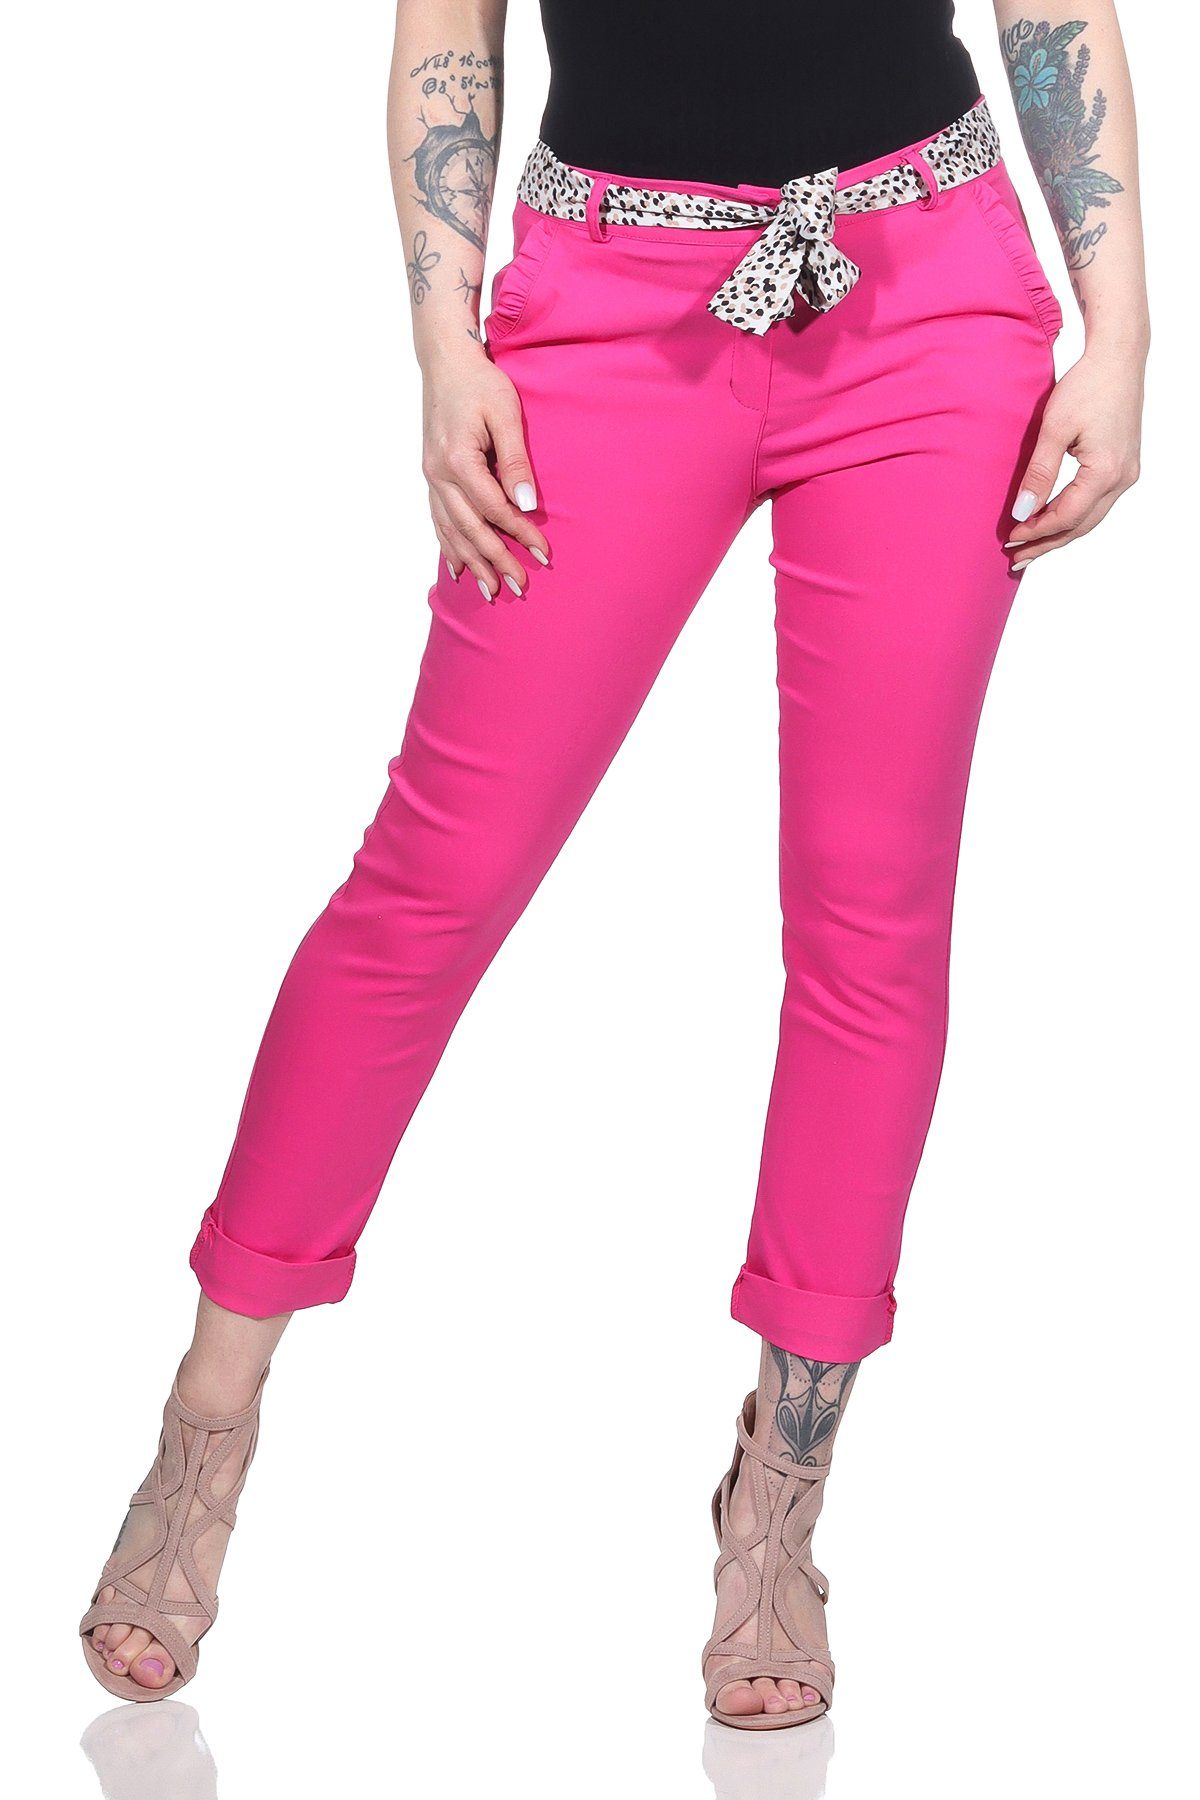 Rosa Arbeithosen für Damen kaufen » Pinke Arbeithosen | OTTO